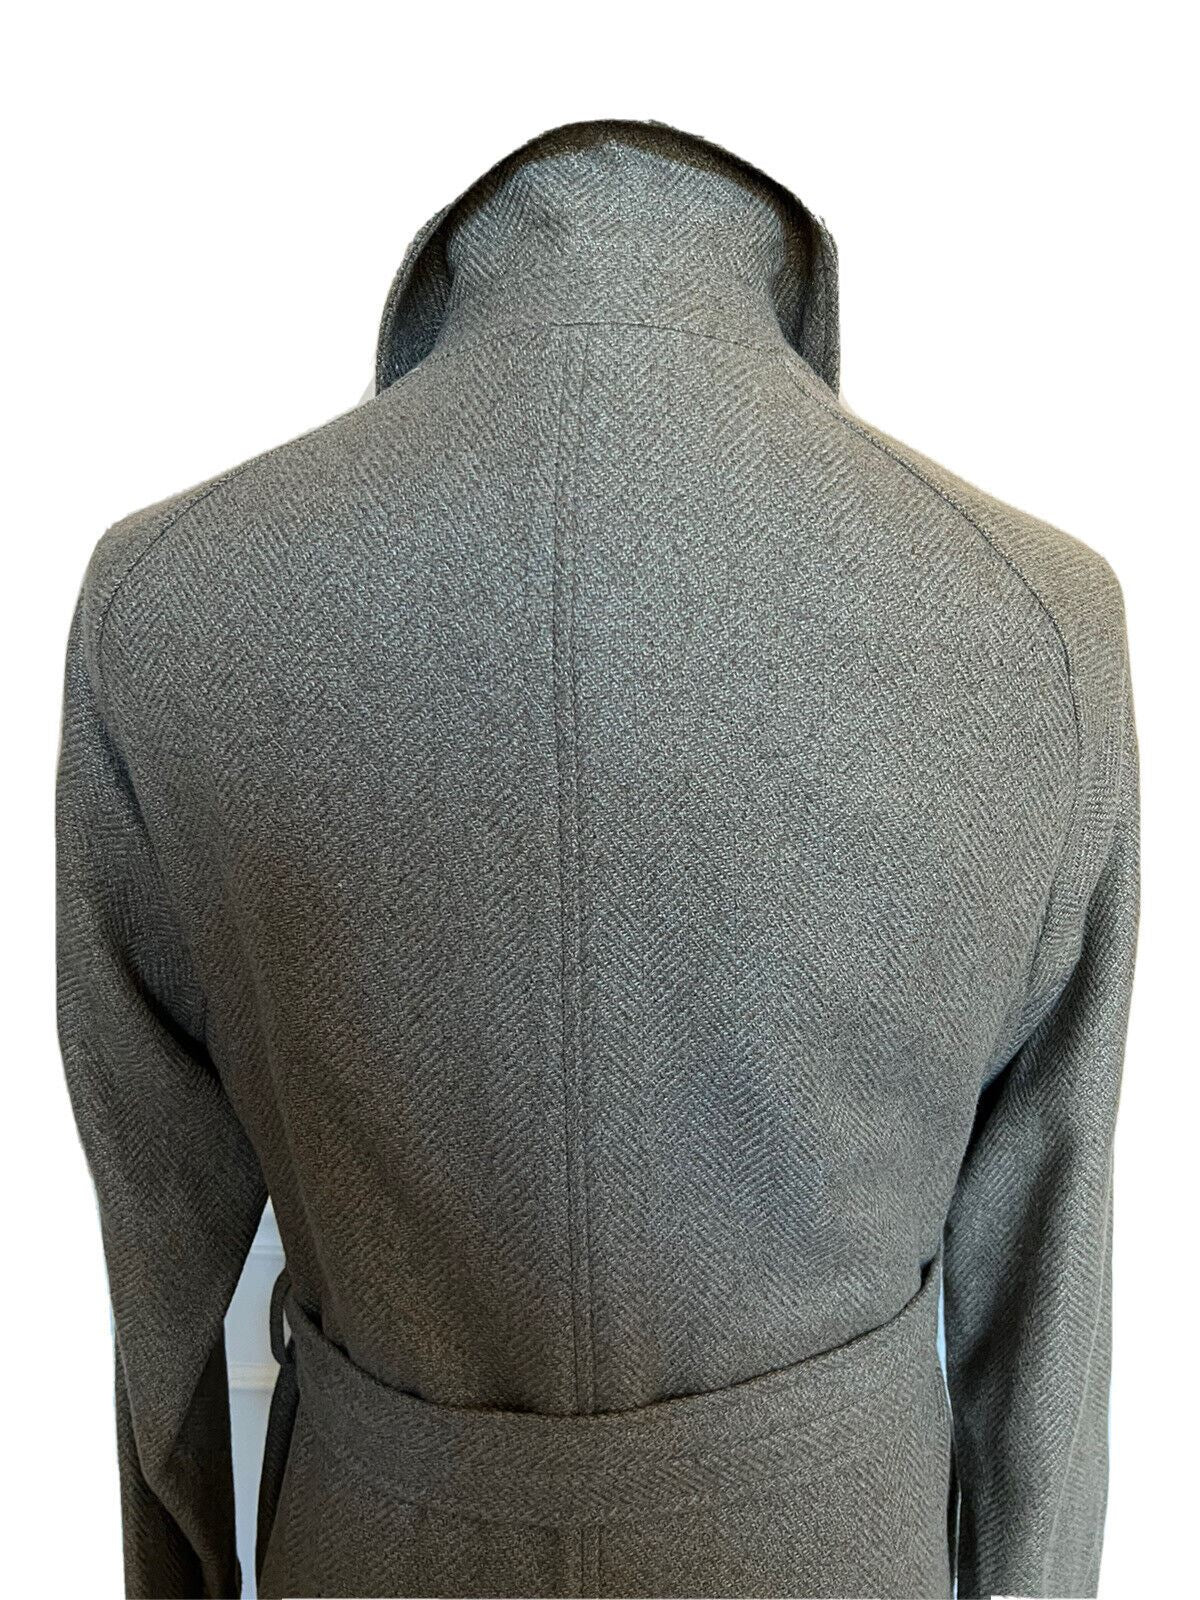 NWT $2995 Ralph Lauren Purple Label Men's Wool/Silk Coat Green Size 40 Italy